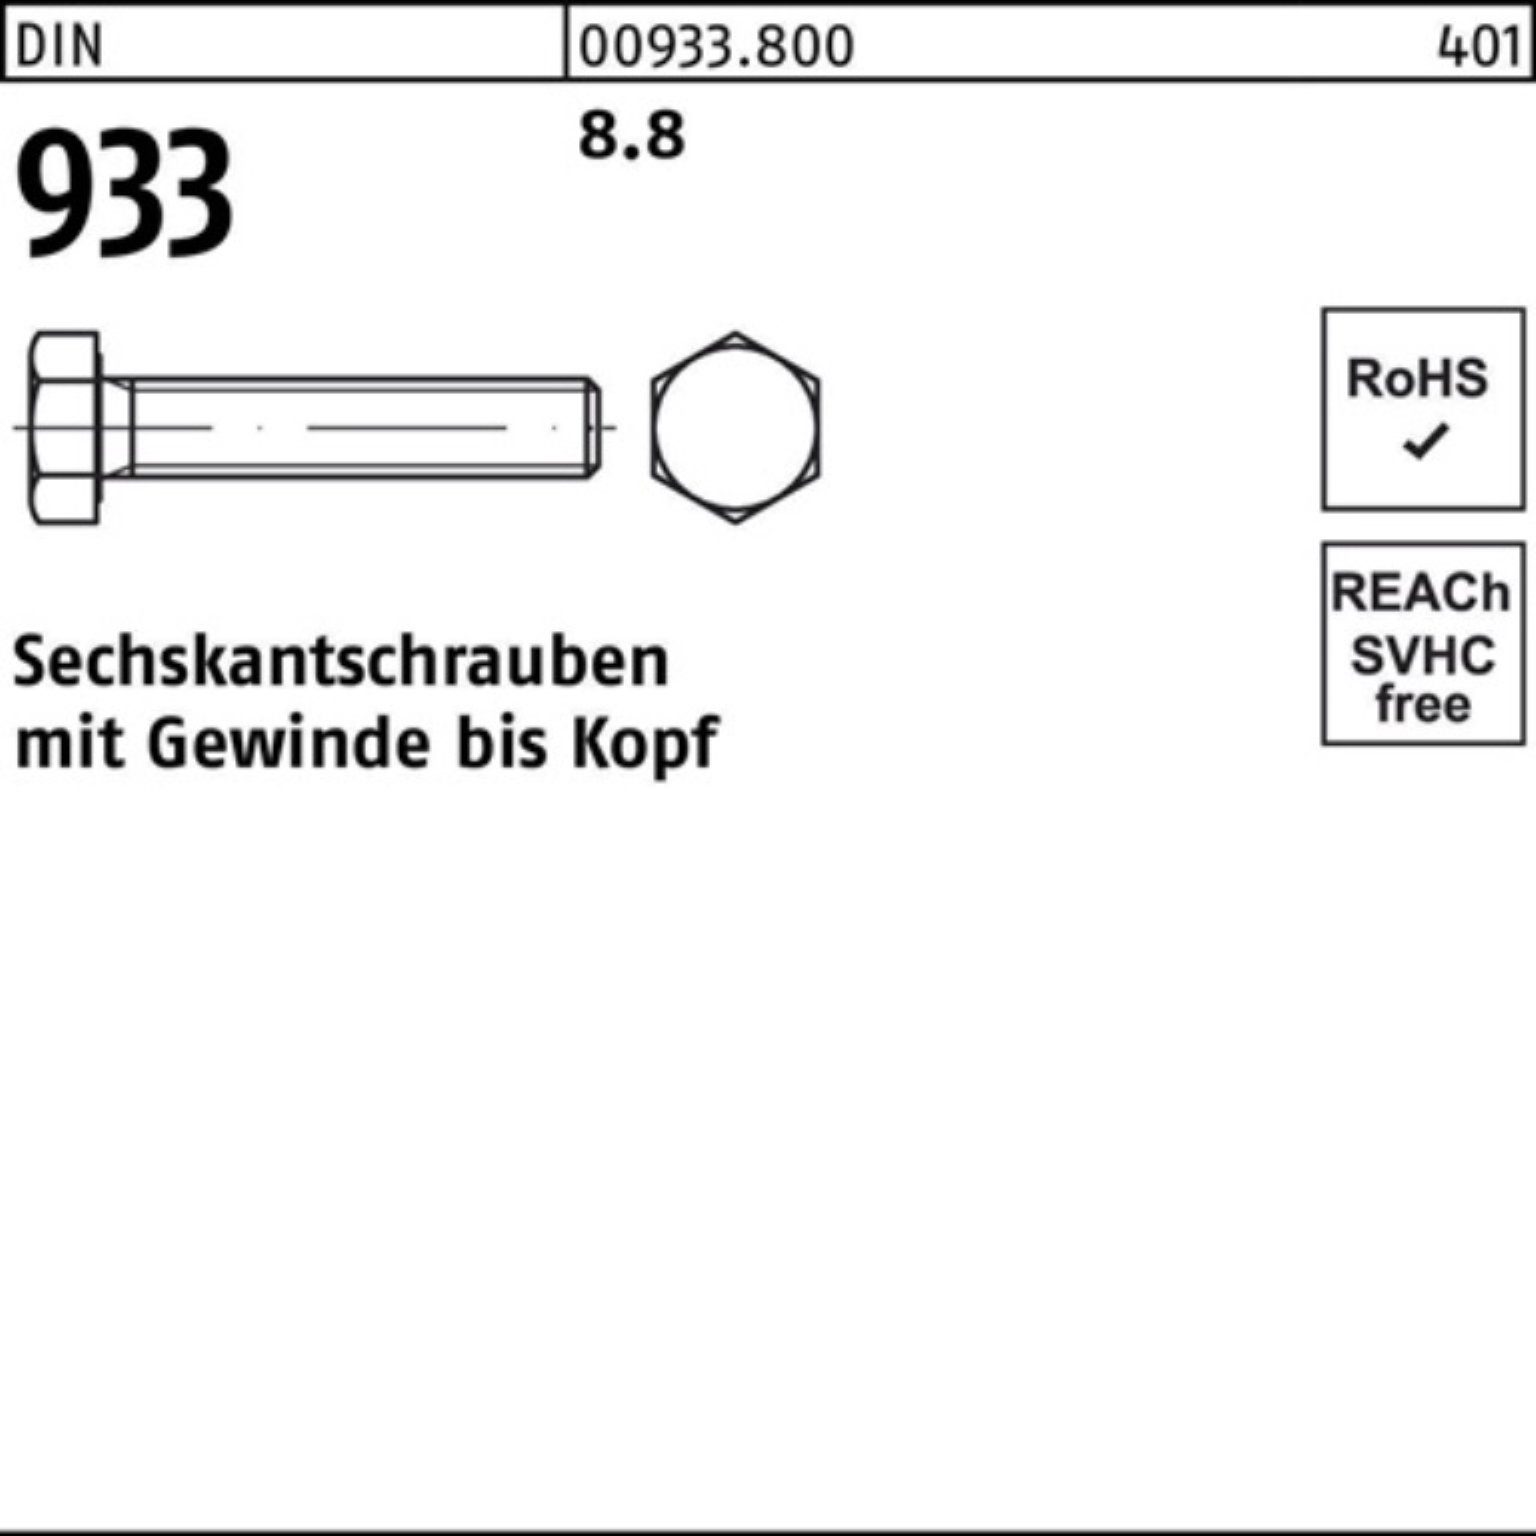 Reyher Sechskantschraube 100er 933 DIN Stück VG M18x DIN 70 933 8.8 Sechskantschraube 25 Pack